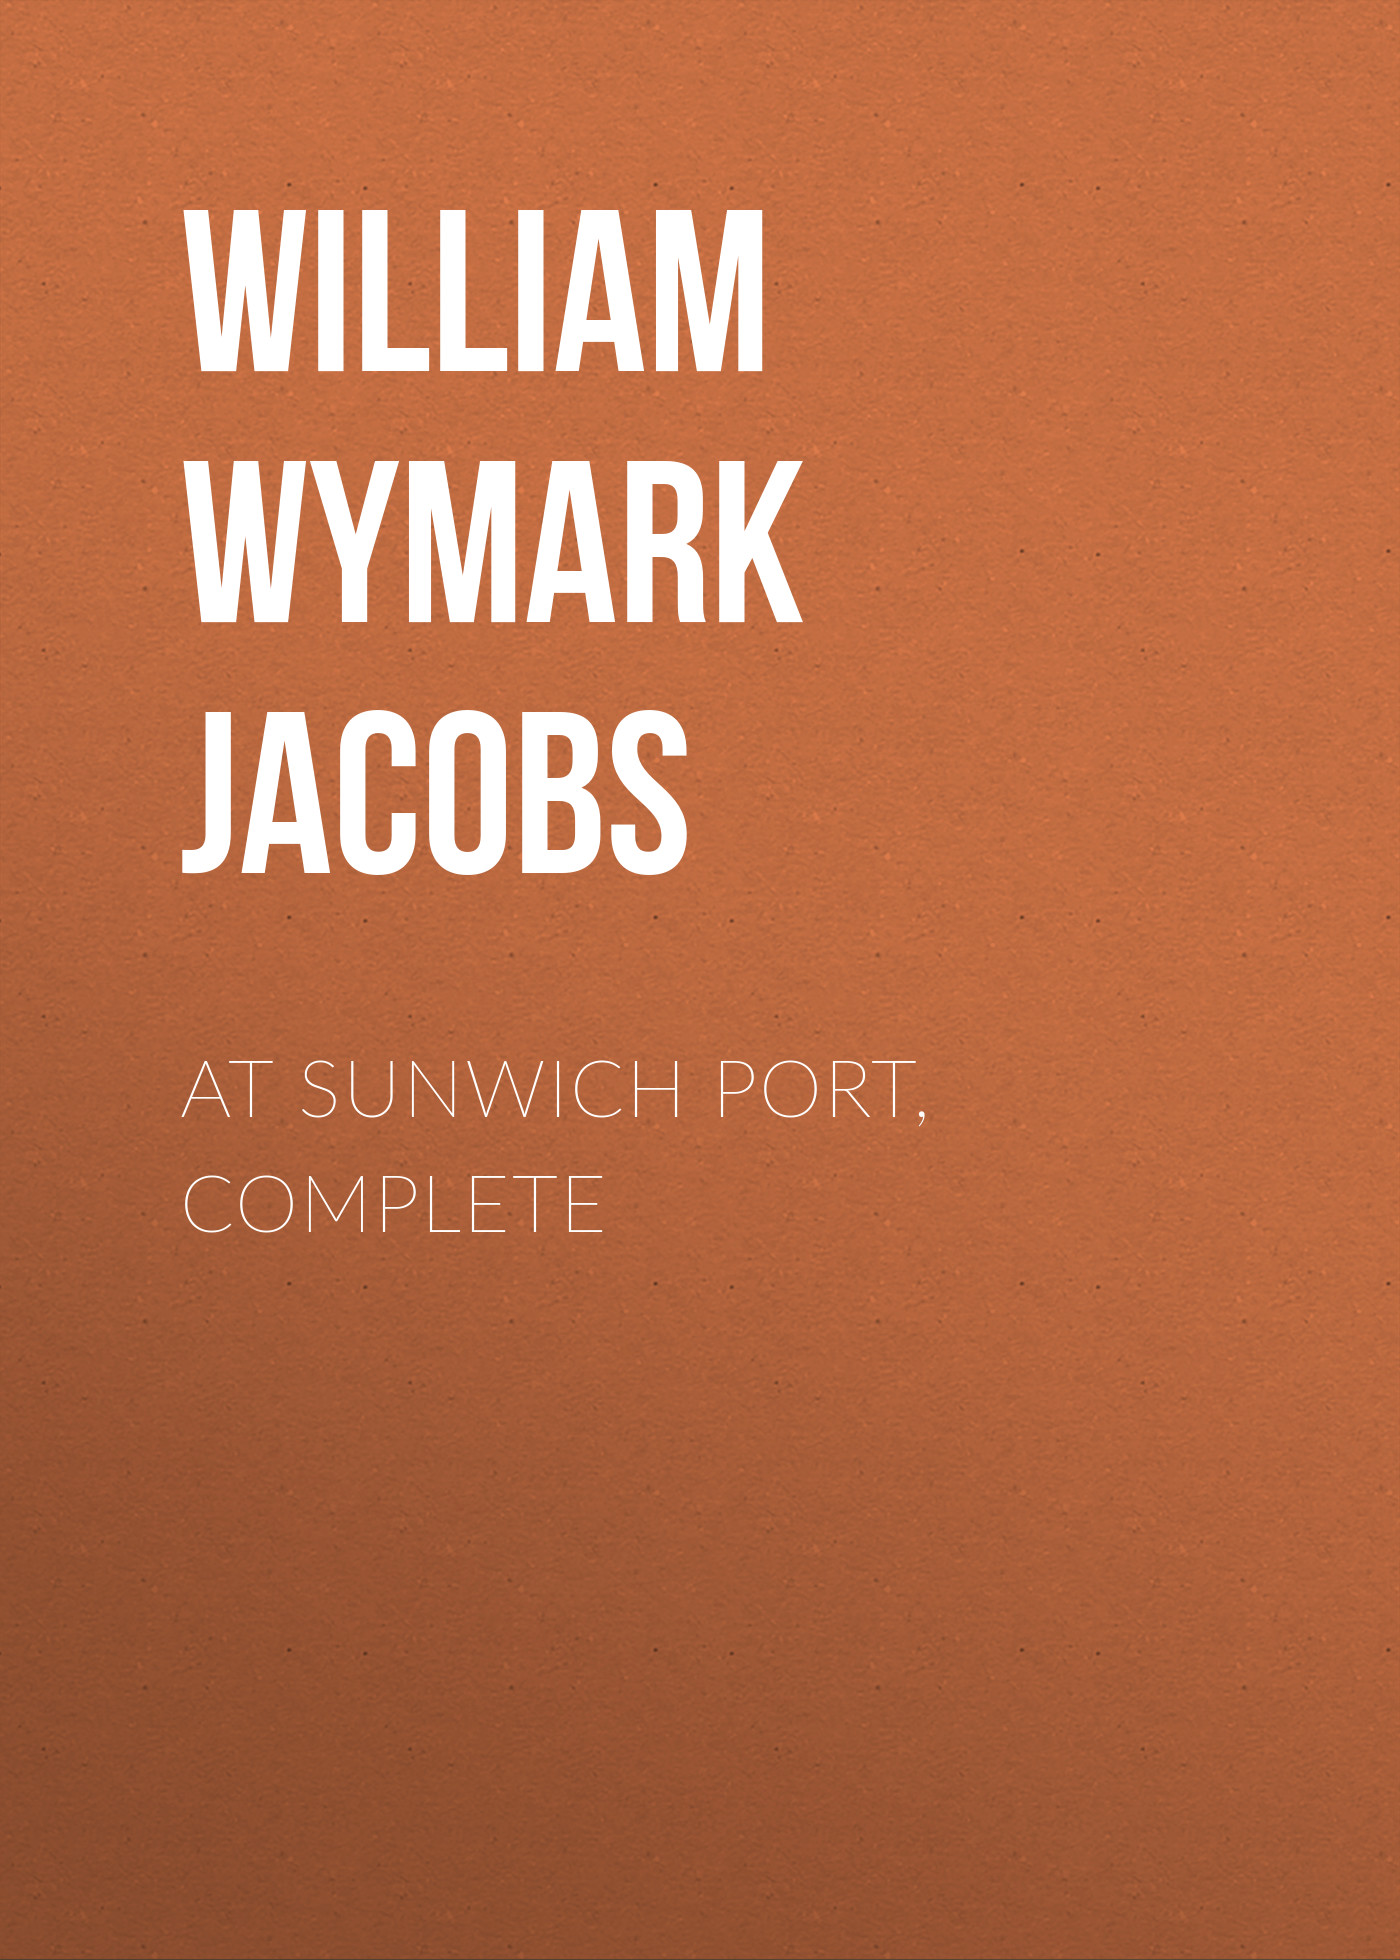 Книга At Sunwich Port, Complete из серии , созданная William Wymark Jacobs, может относится к жанру Зарубежная классика, Зарубежная старинная литература. Стоимость электронной книги At Sunwich Port, Complete с идентификатором 34843686 составляет 0 руб.